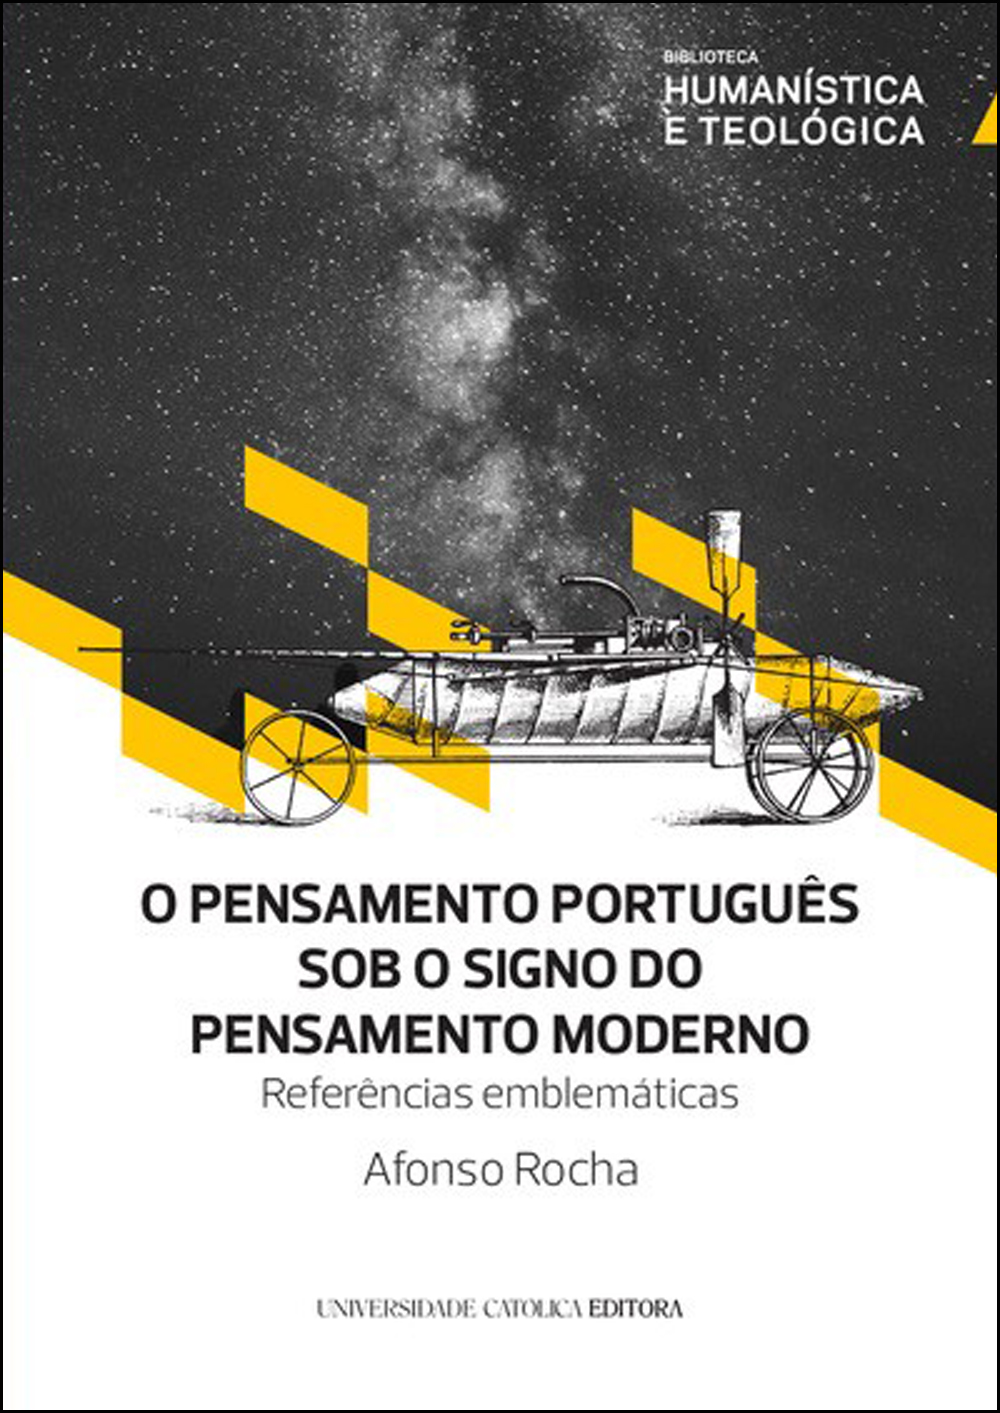 O PENSAMENTO PORTUGUÊS SOB O SIGNO DO PENSAMENTO MODERNO - Referências emblemáticas - Universidade Católica Portuguesa - Porto